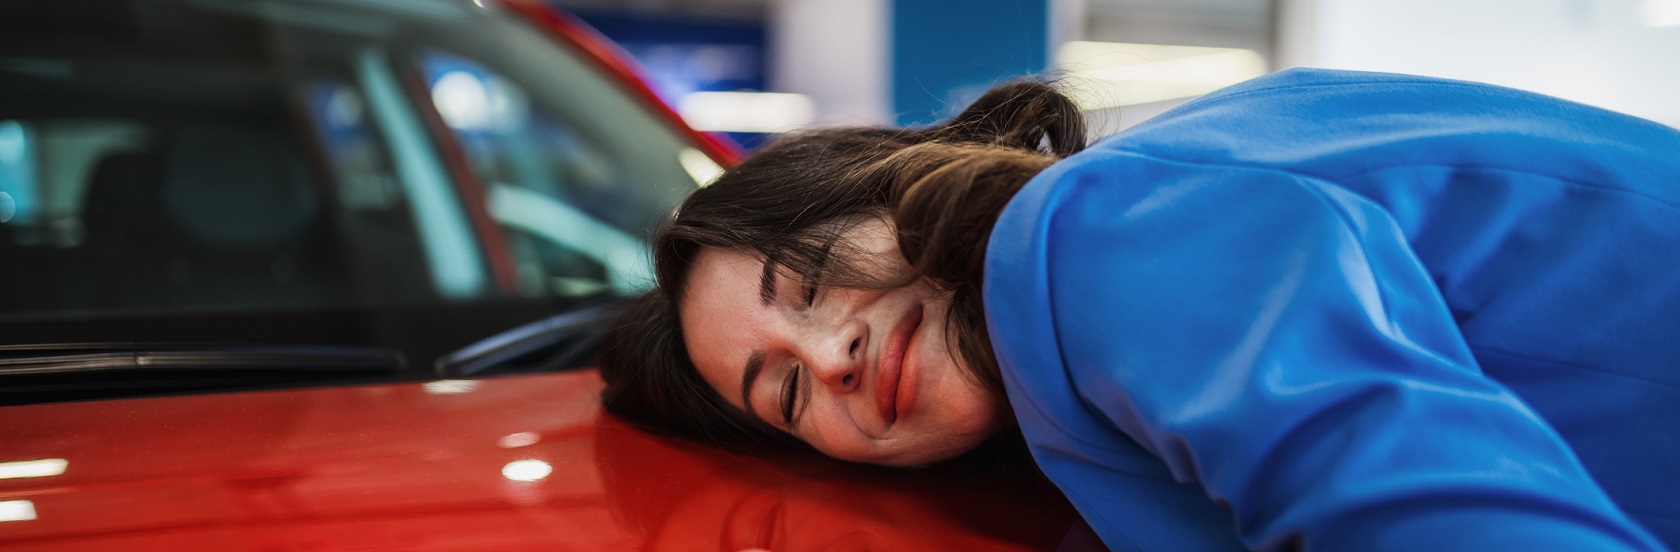 Imagen de chica feliz junto a su nuevo auto color rojo